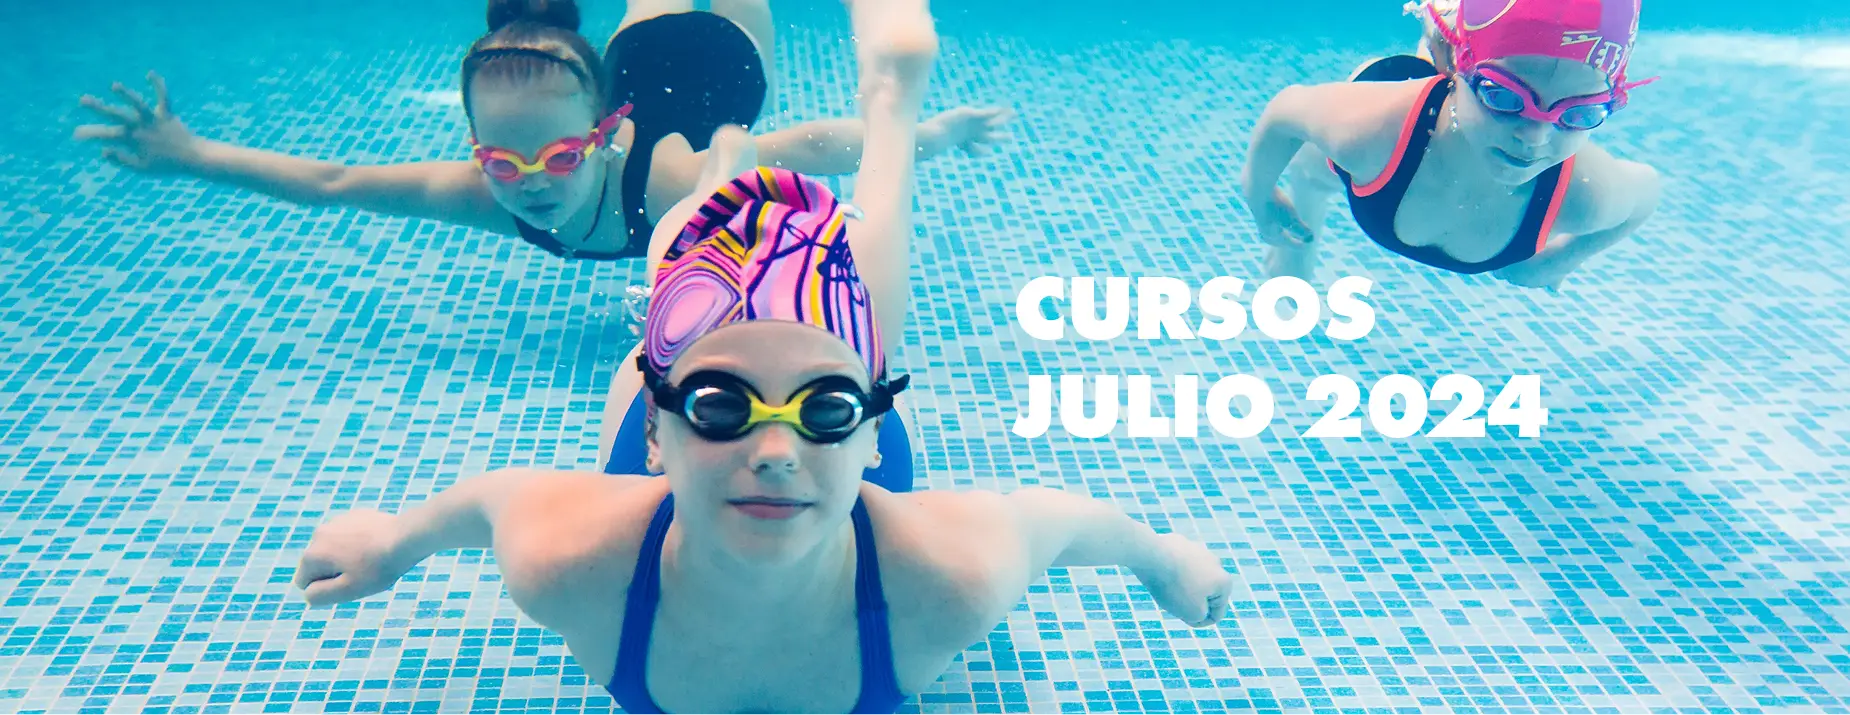 Cursos de natación julio 2024 - Aiguajoc